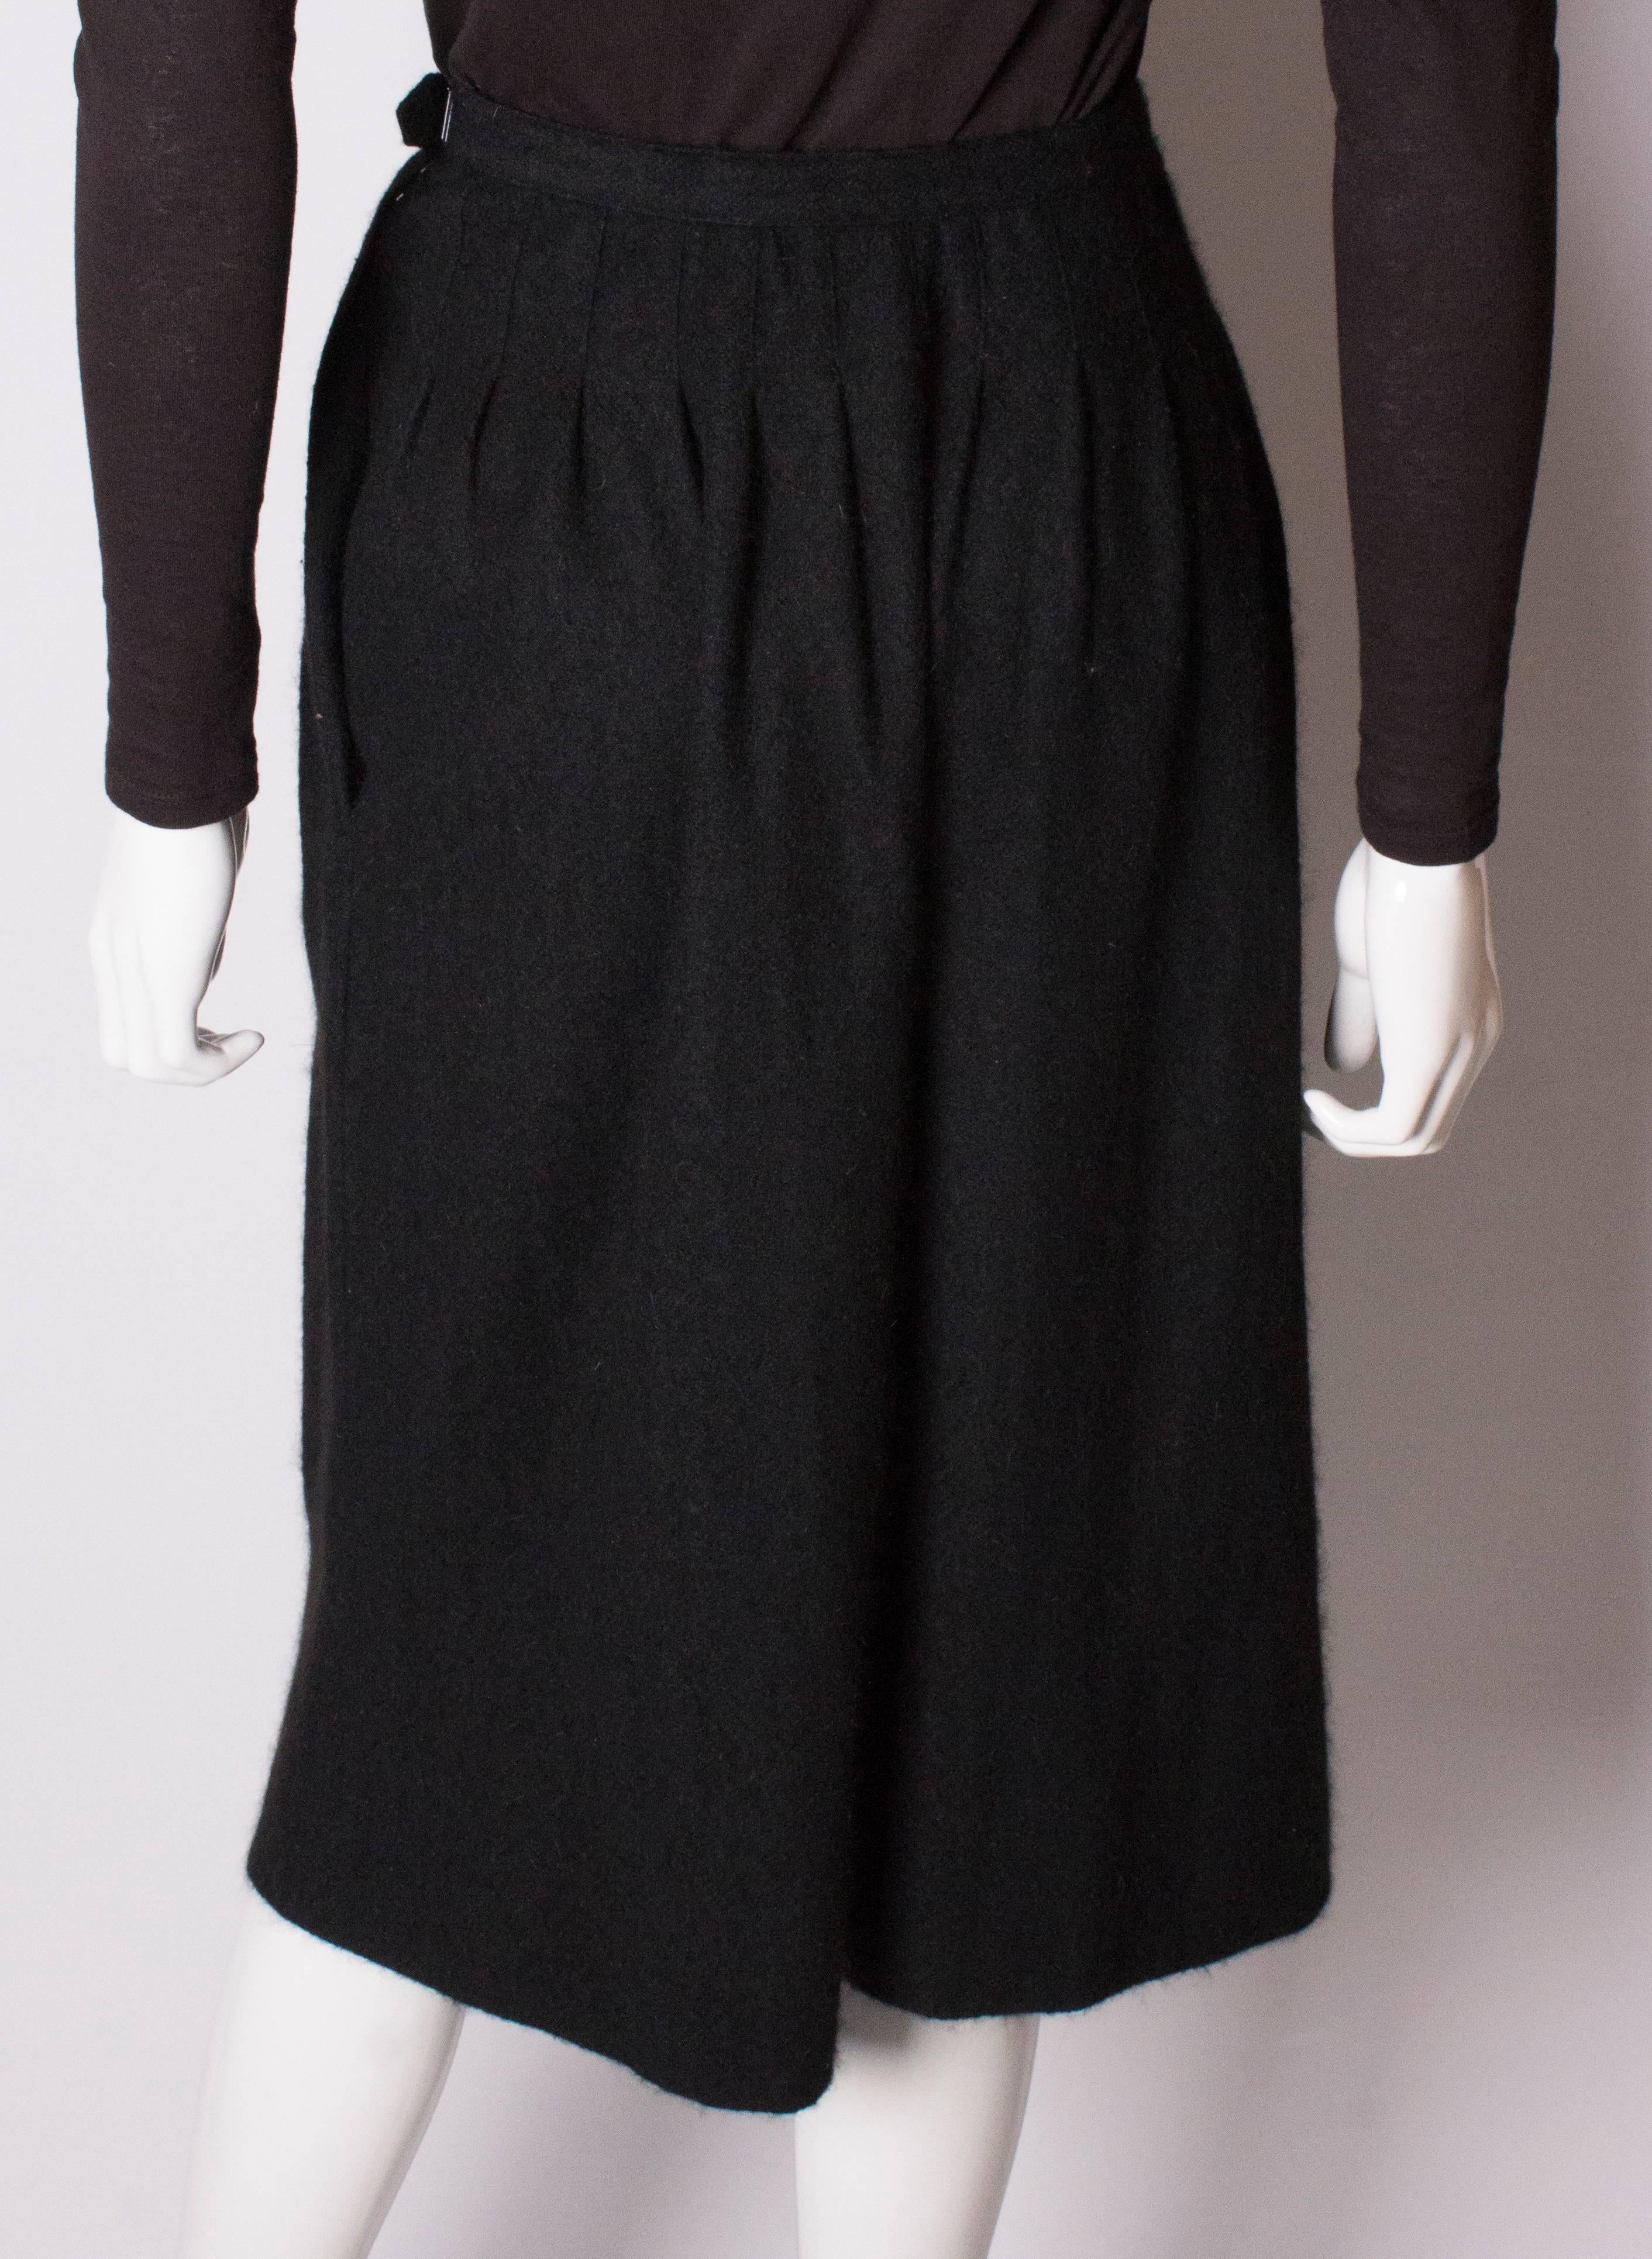 Yves Saint Laurent Vintage Rive Gauche Cashmere Skirt 2